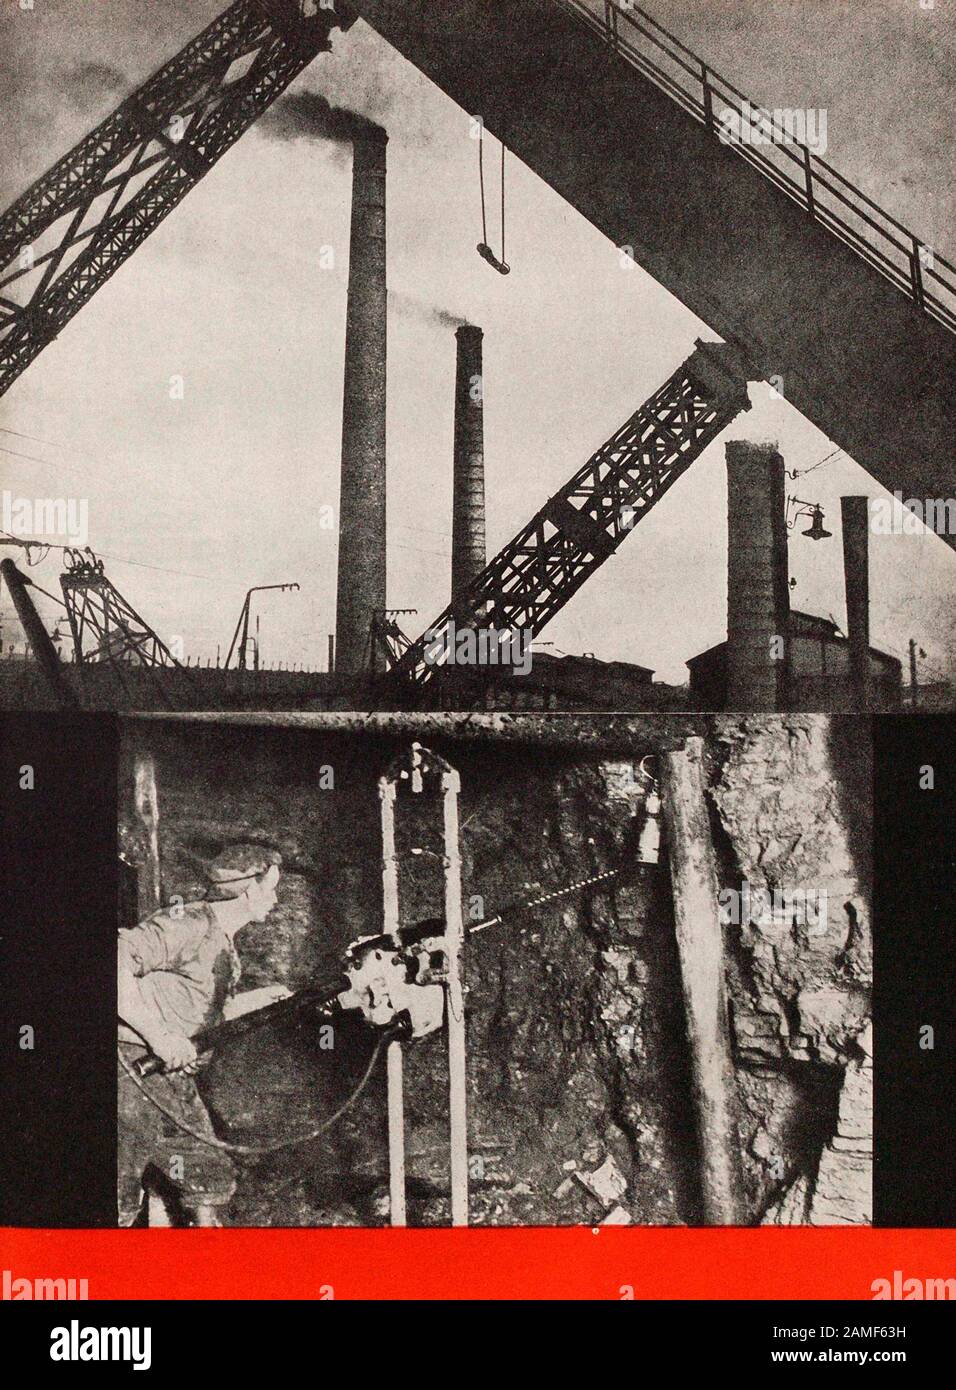 Das Leben in der Sowjetunion in den 1930er Jahren. Aus dem sowjetischen Propagandabuch Kohlebergbau, Kohleförderung Stockfoto